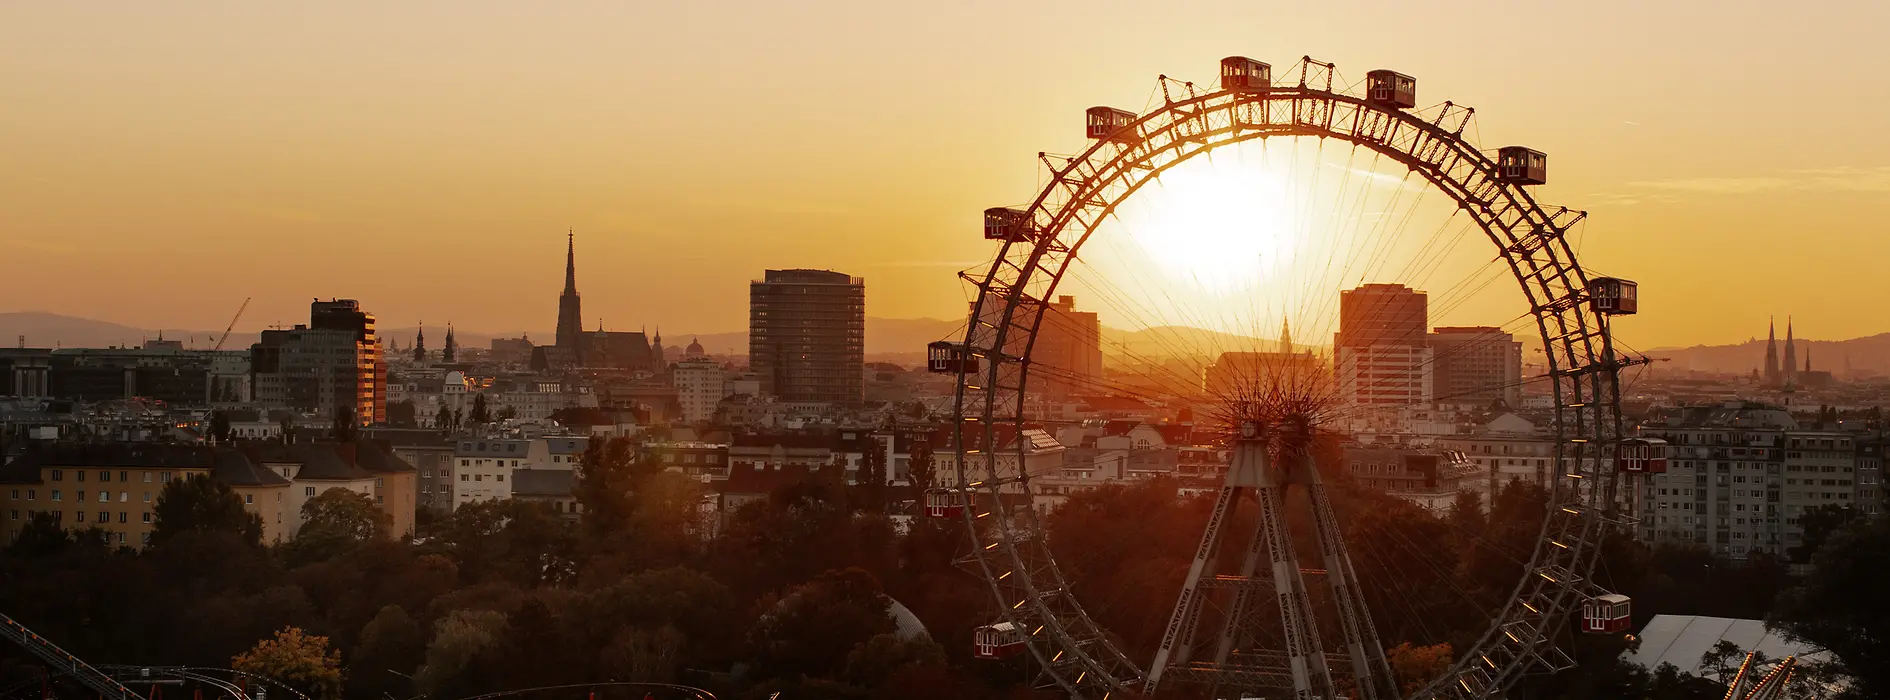 Ruota panoramica nel Prater di Vienna, sullo sfondo lo skyline di Vienna al tramonto